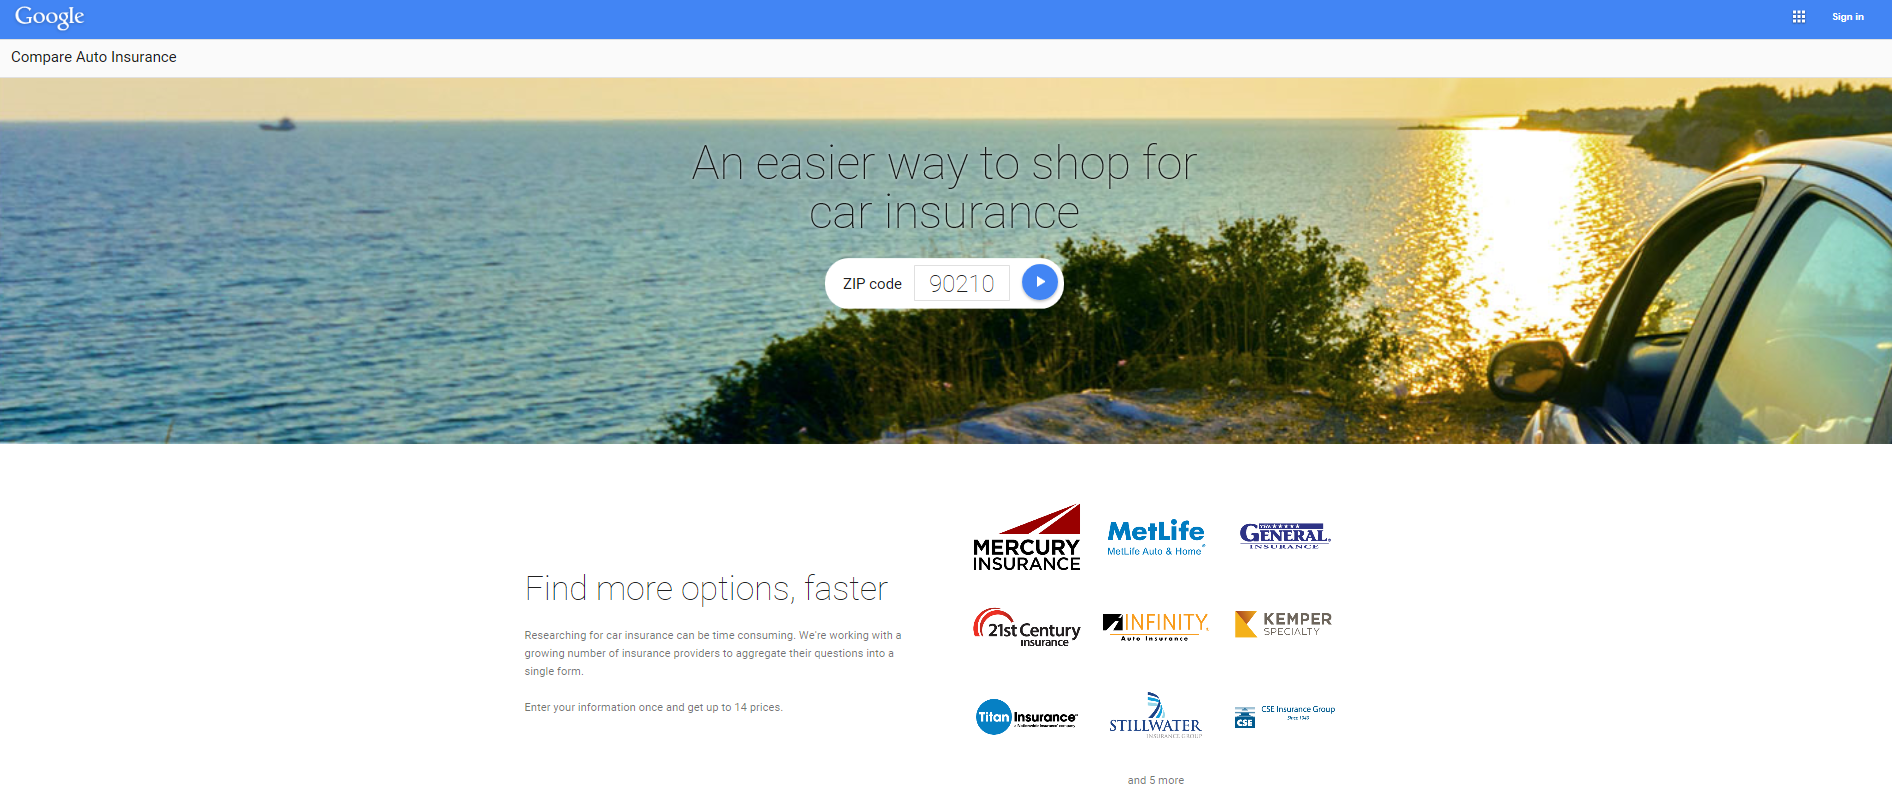 Google Launches Auto Insurance Comparison Tool ...